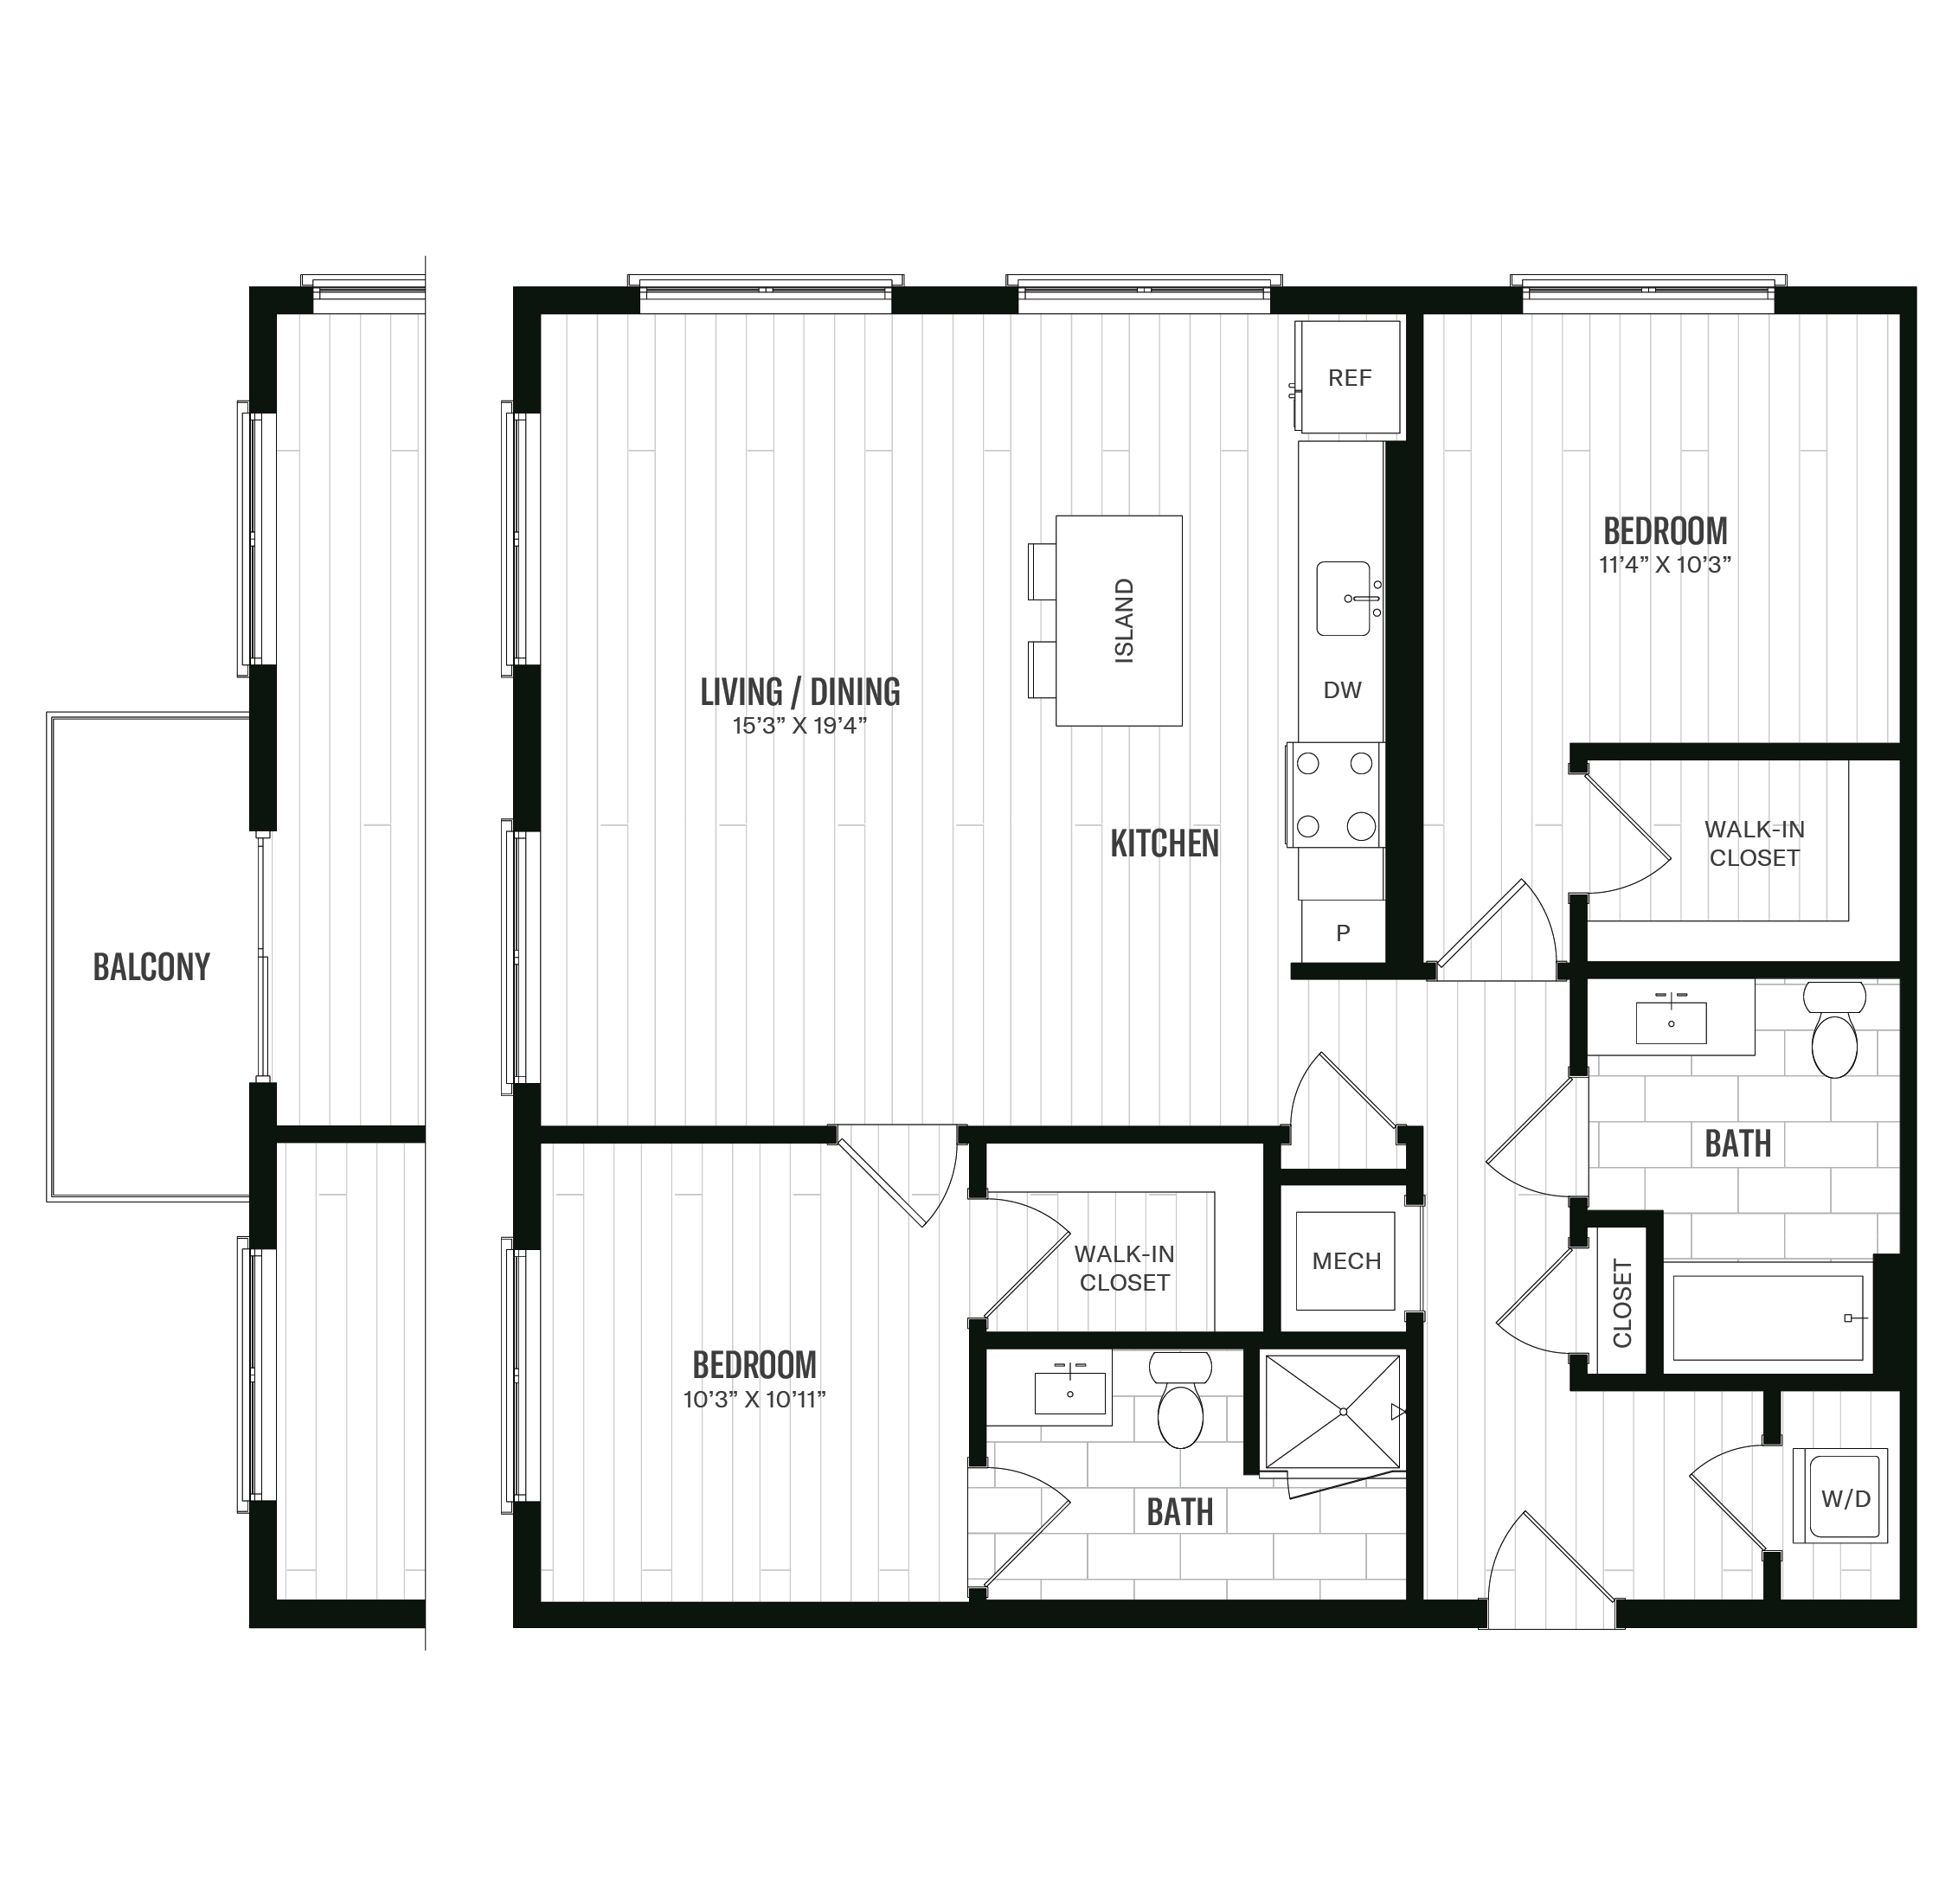 Floorplan image of unit 263